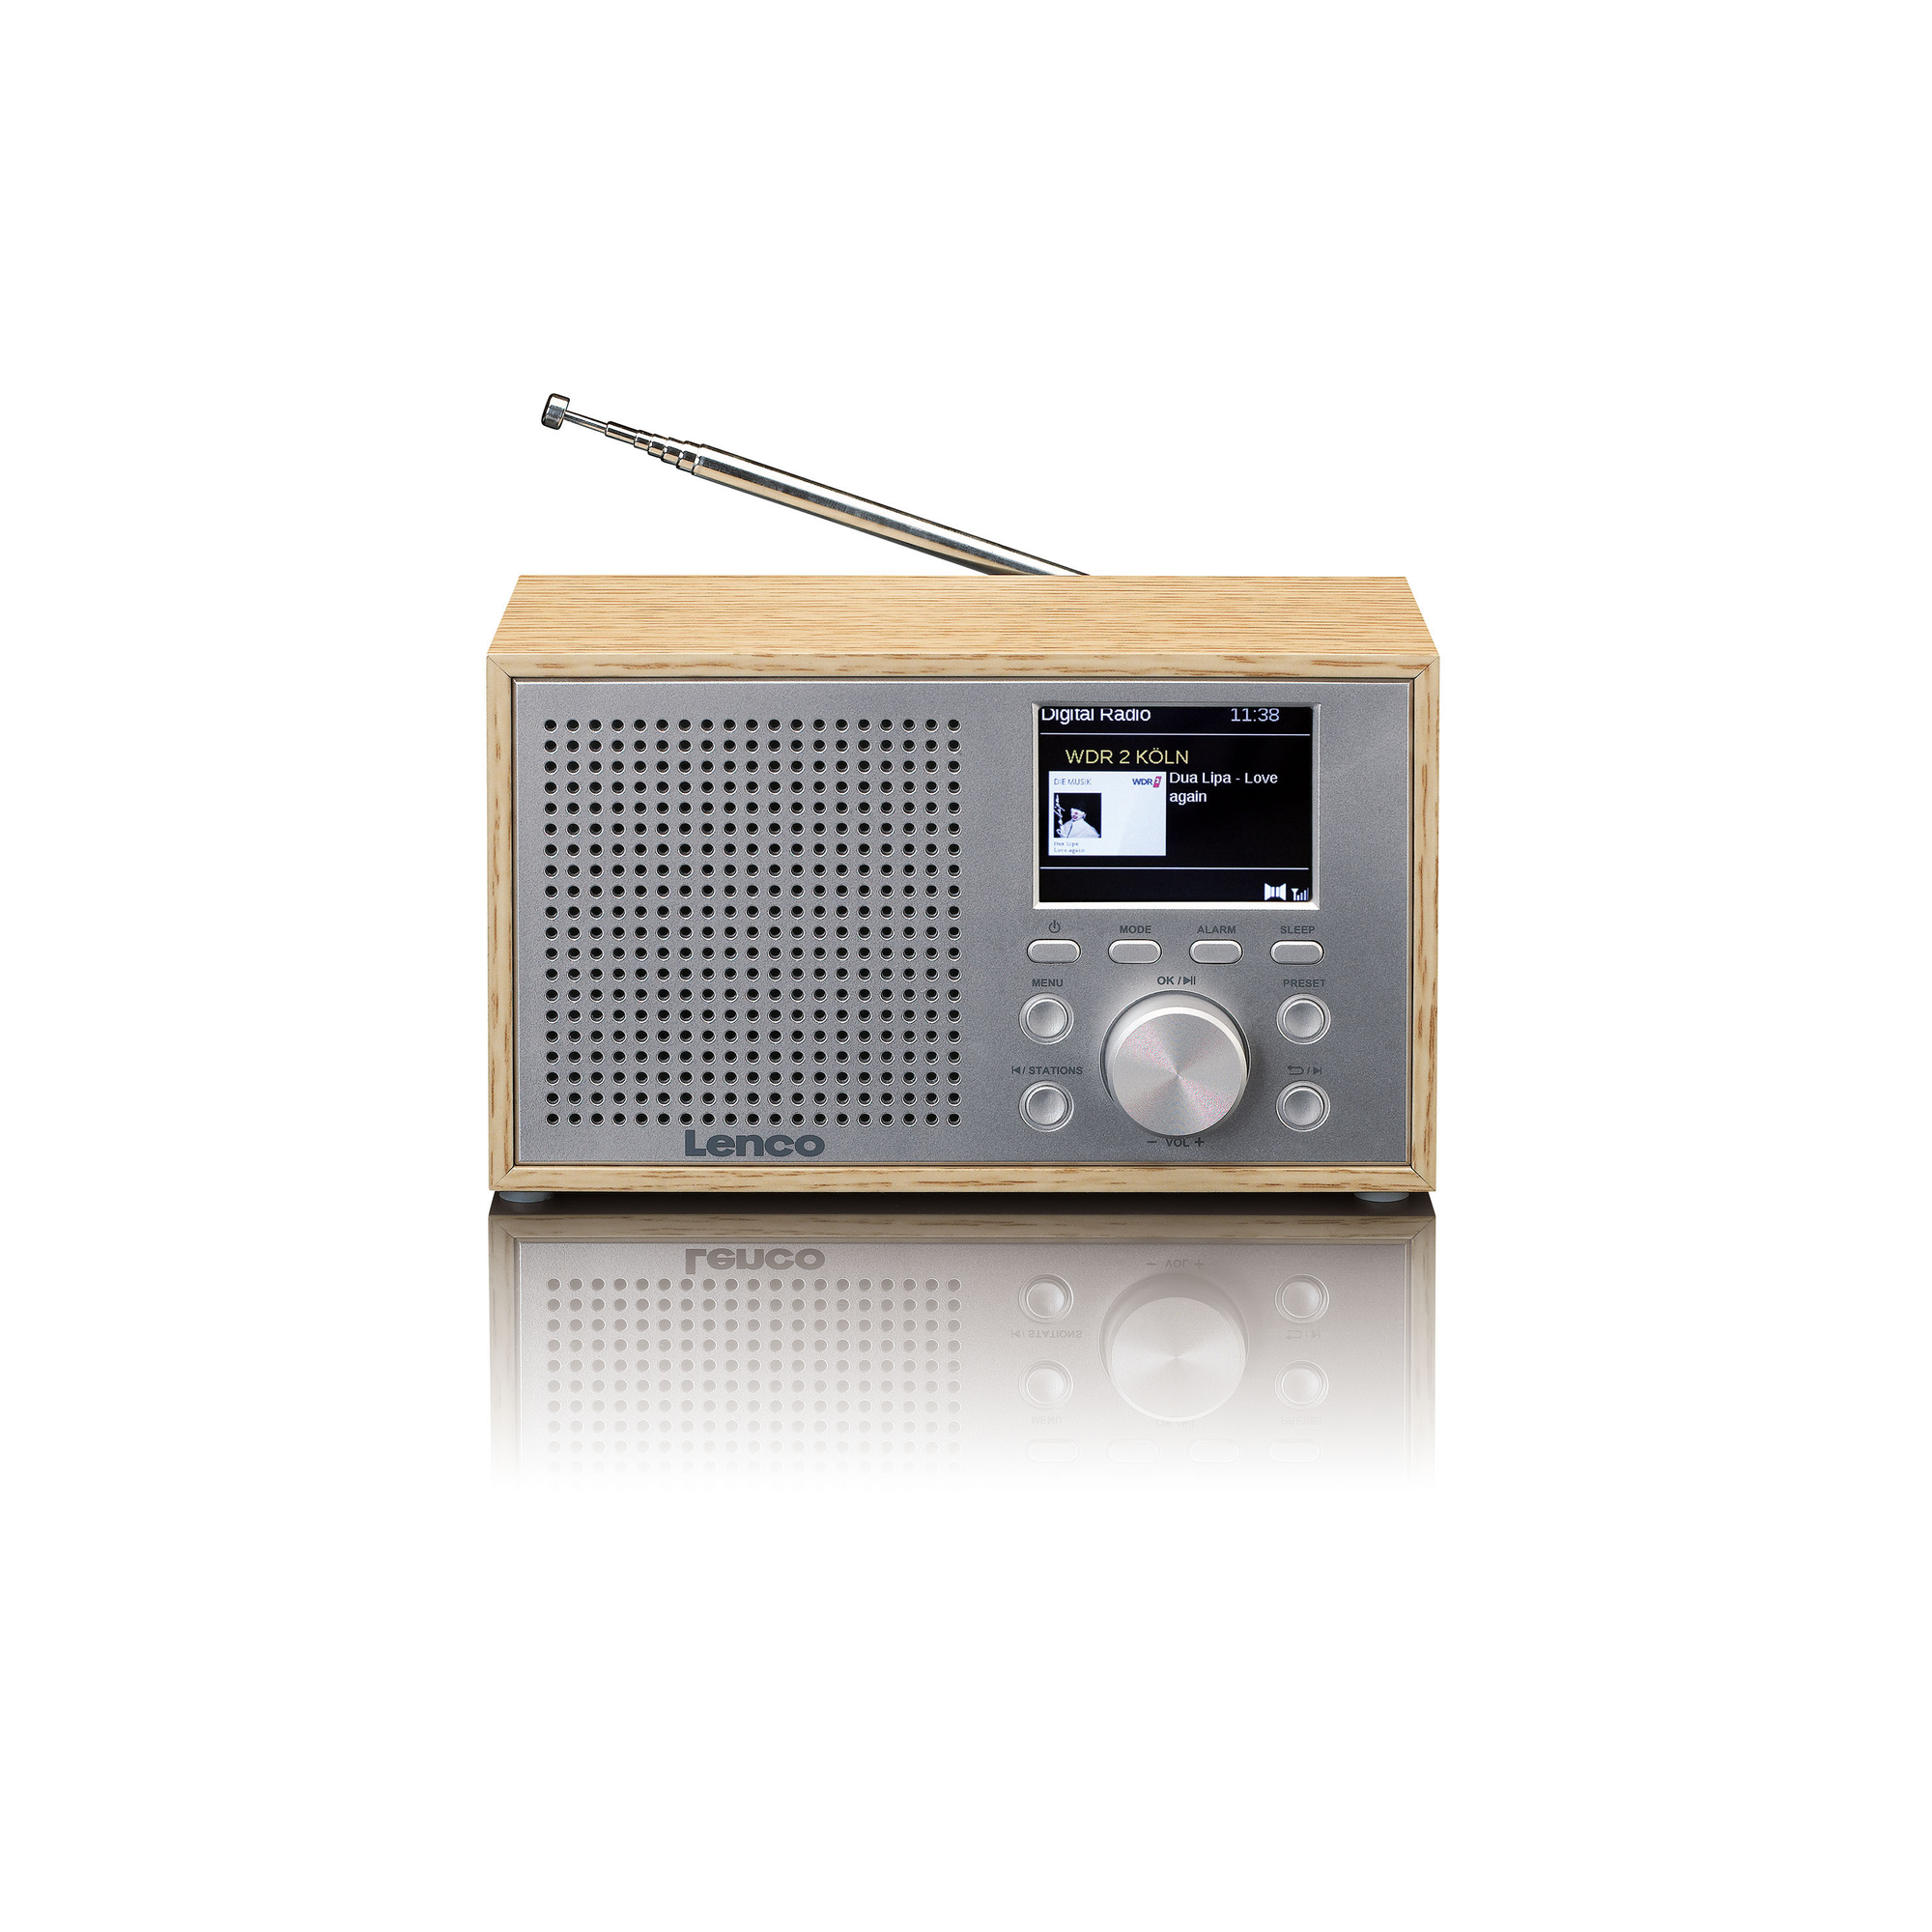 LENCO Radio, Bluetooth, FM, Radiowecker Holz DAB+,Tischradio,Tragbares DAB+, DAB, DAR-017WH -